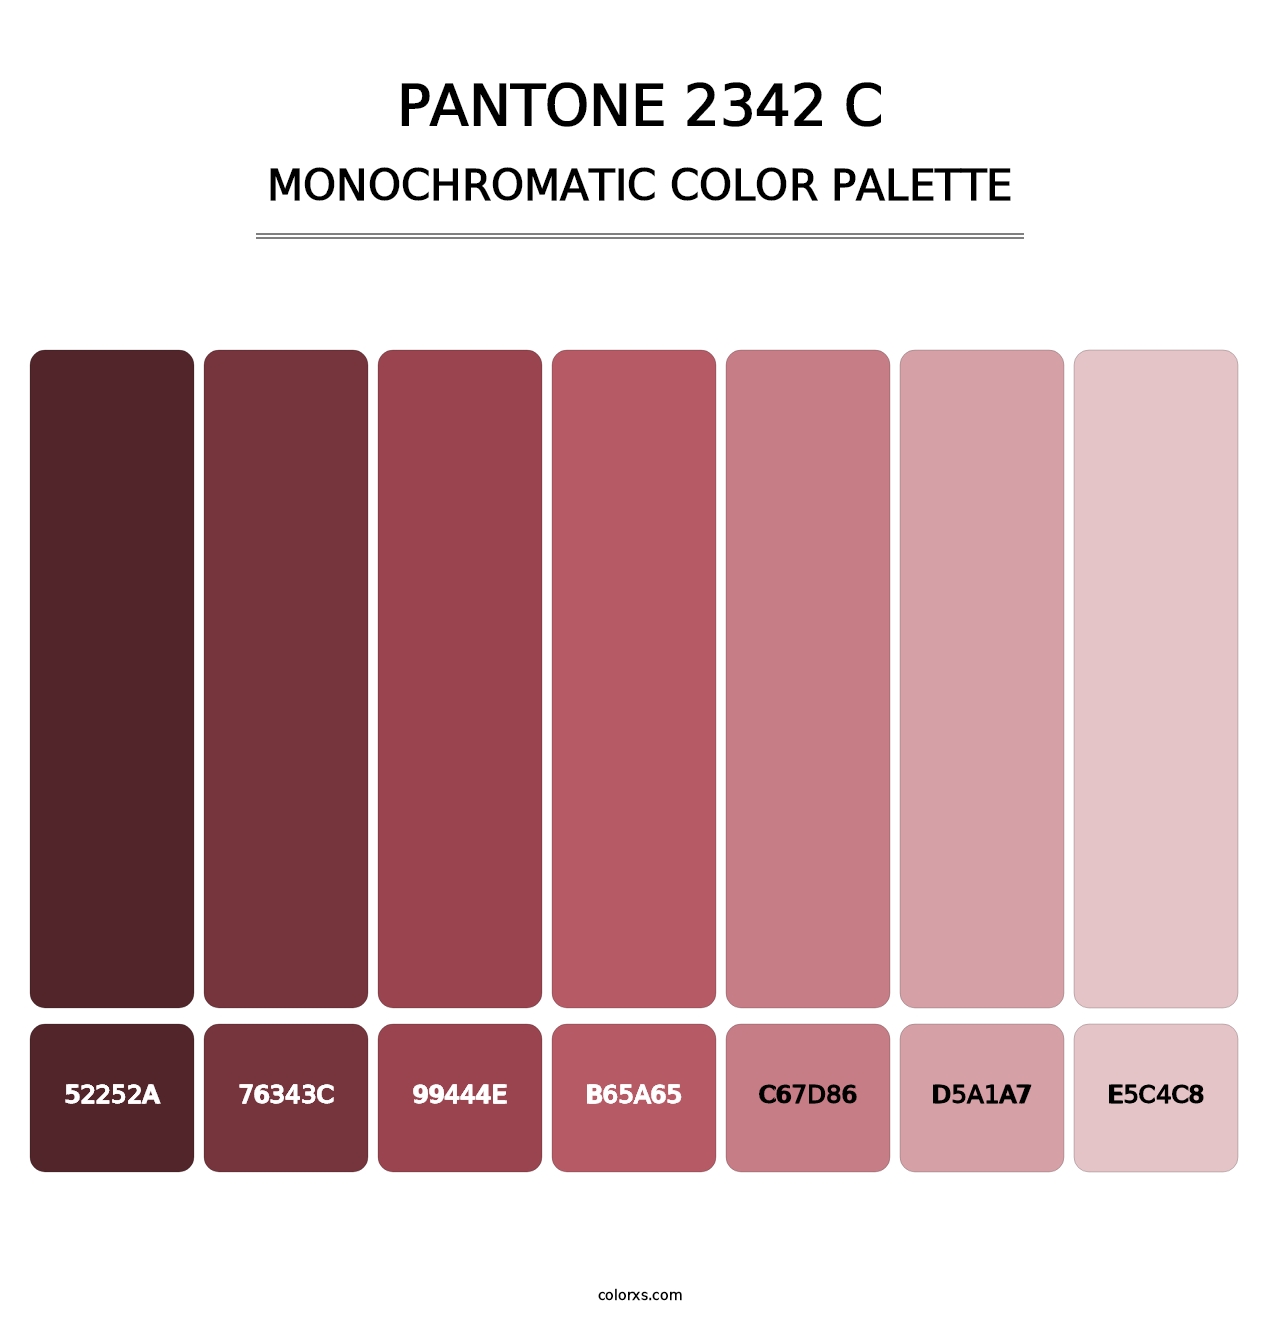 PANTONE 2342 C - Monochromatic Color Palette